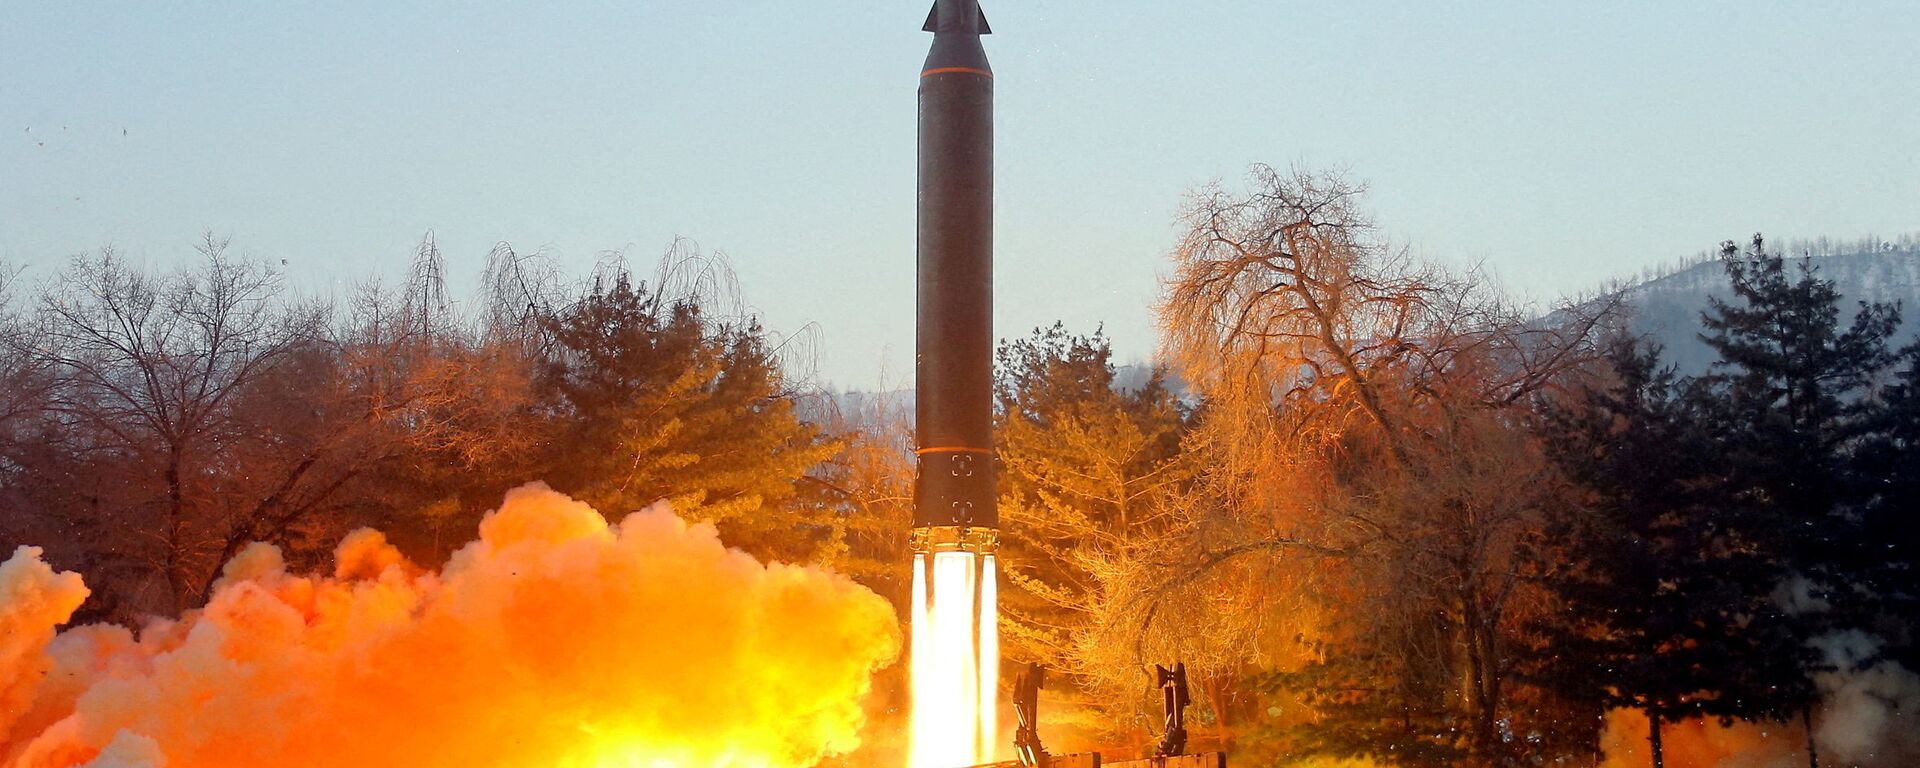 اختبار إطلاق صاروخ تفوق سرعته سرعة الصوت في كوريا الشمالية، 11 يناير 2022  - سبوتنيك عربي, 1920, 18.05.2022